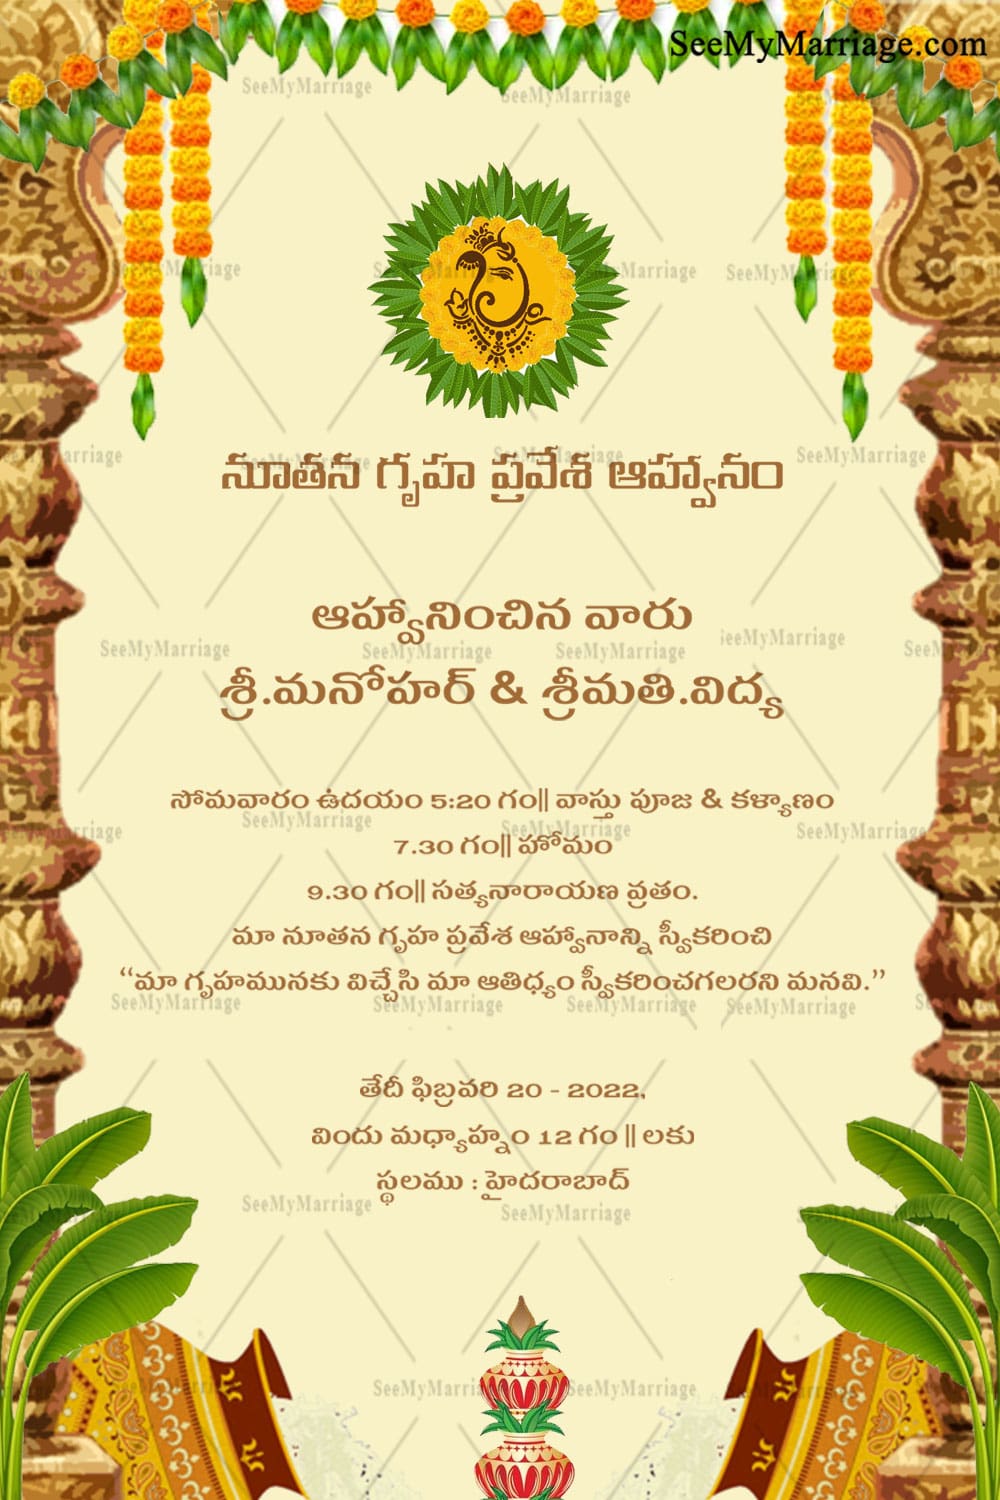 Mời bạn đến với thế giới truyền thống Telugu với thiệp mừng khai trương nhà truyền thống. Thiết kế với cột đền tuyệt đẹp sẽ khiến cho bất kỳ ai nhận được thiệp đều cảm thấy trân trọng và đón chào một sự kiện quan trọng. Hãy cùng xem những thiệp mừng khai trương Telugu đẹp nhất ngay bây giờ!